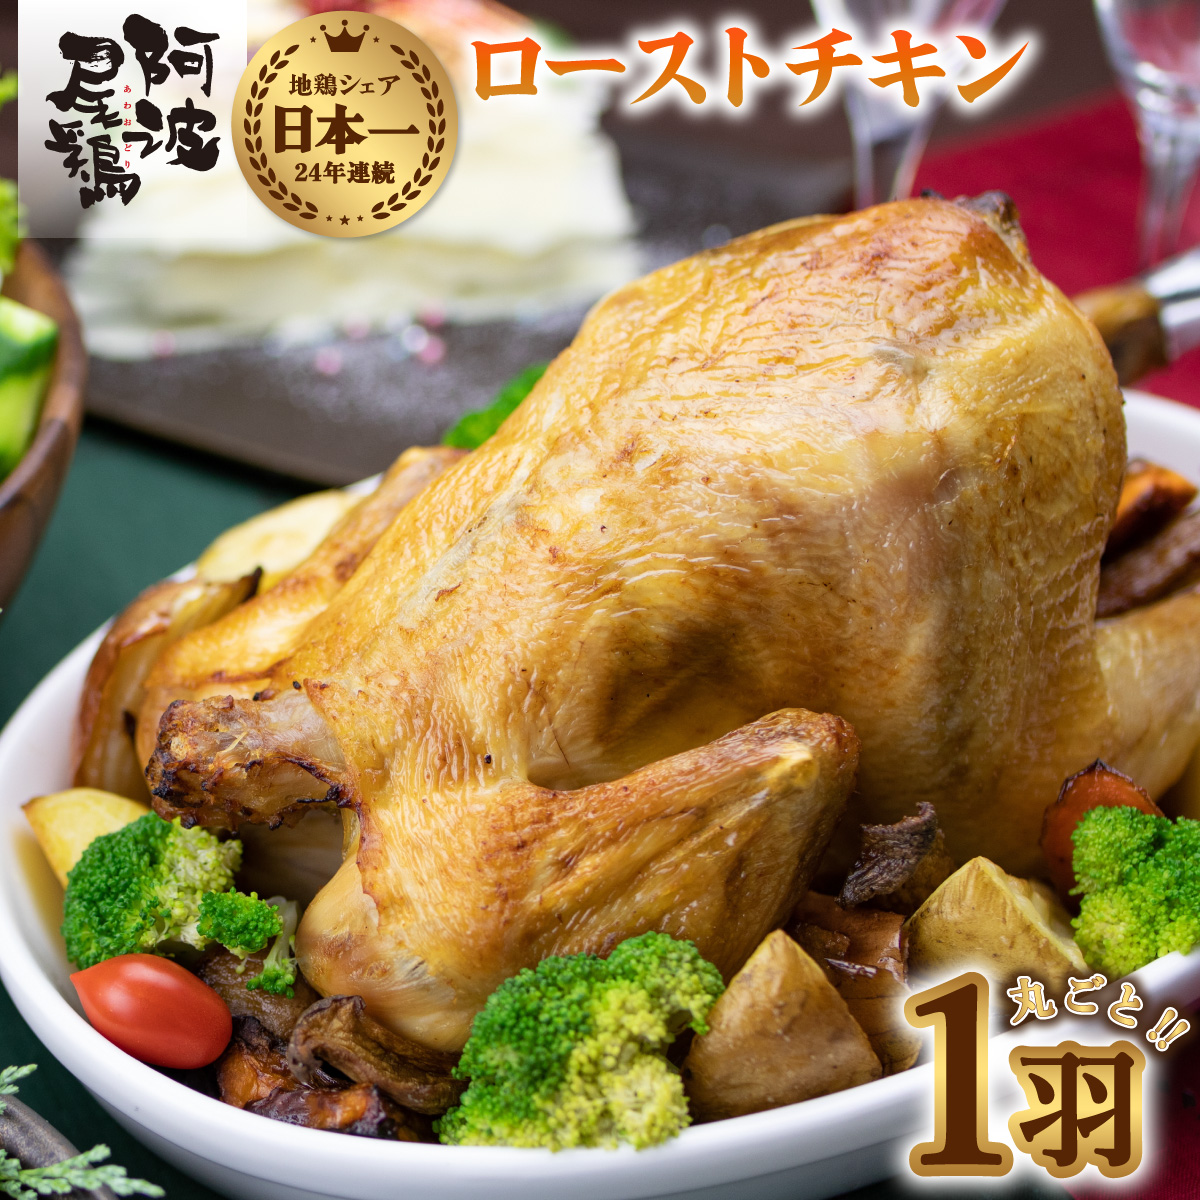 ローストチキン 阿波尾鶏 丸鶏 調理済み 冷凍 丸ごと一羽 国産 徳島県産 クリスマス パーティー 徳島 地鶏 あわおどり 全ての